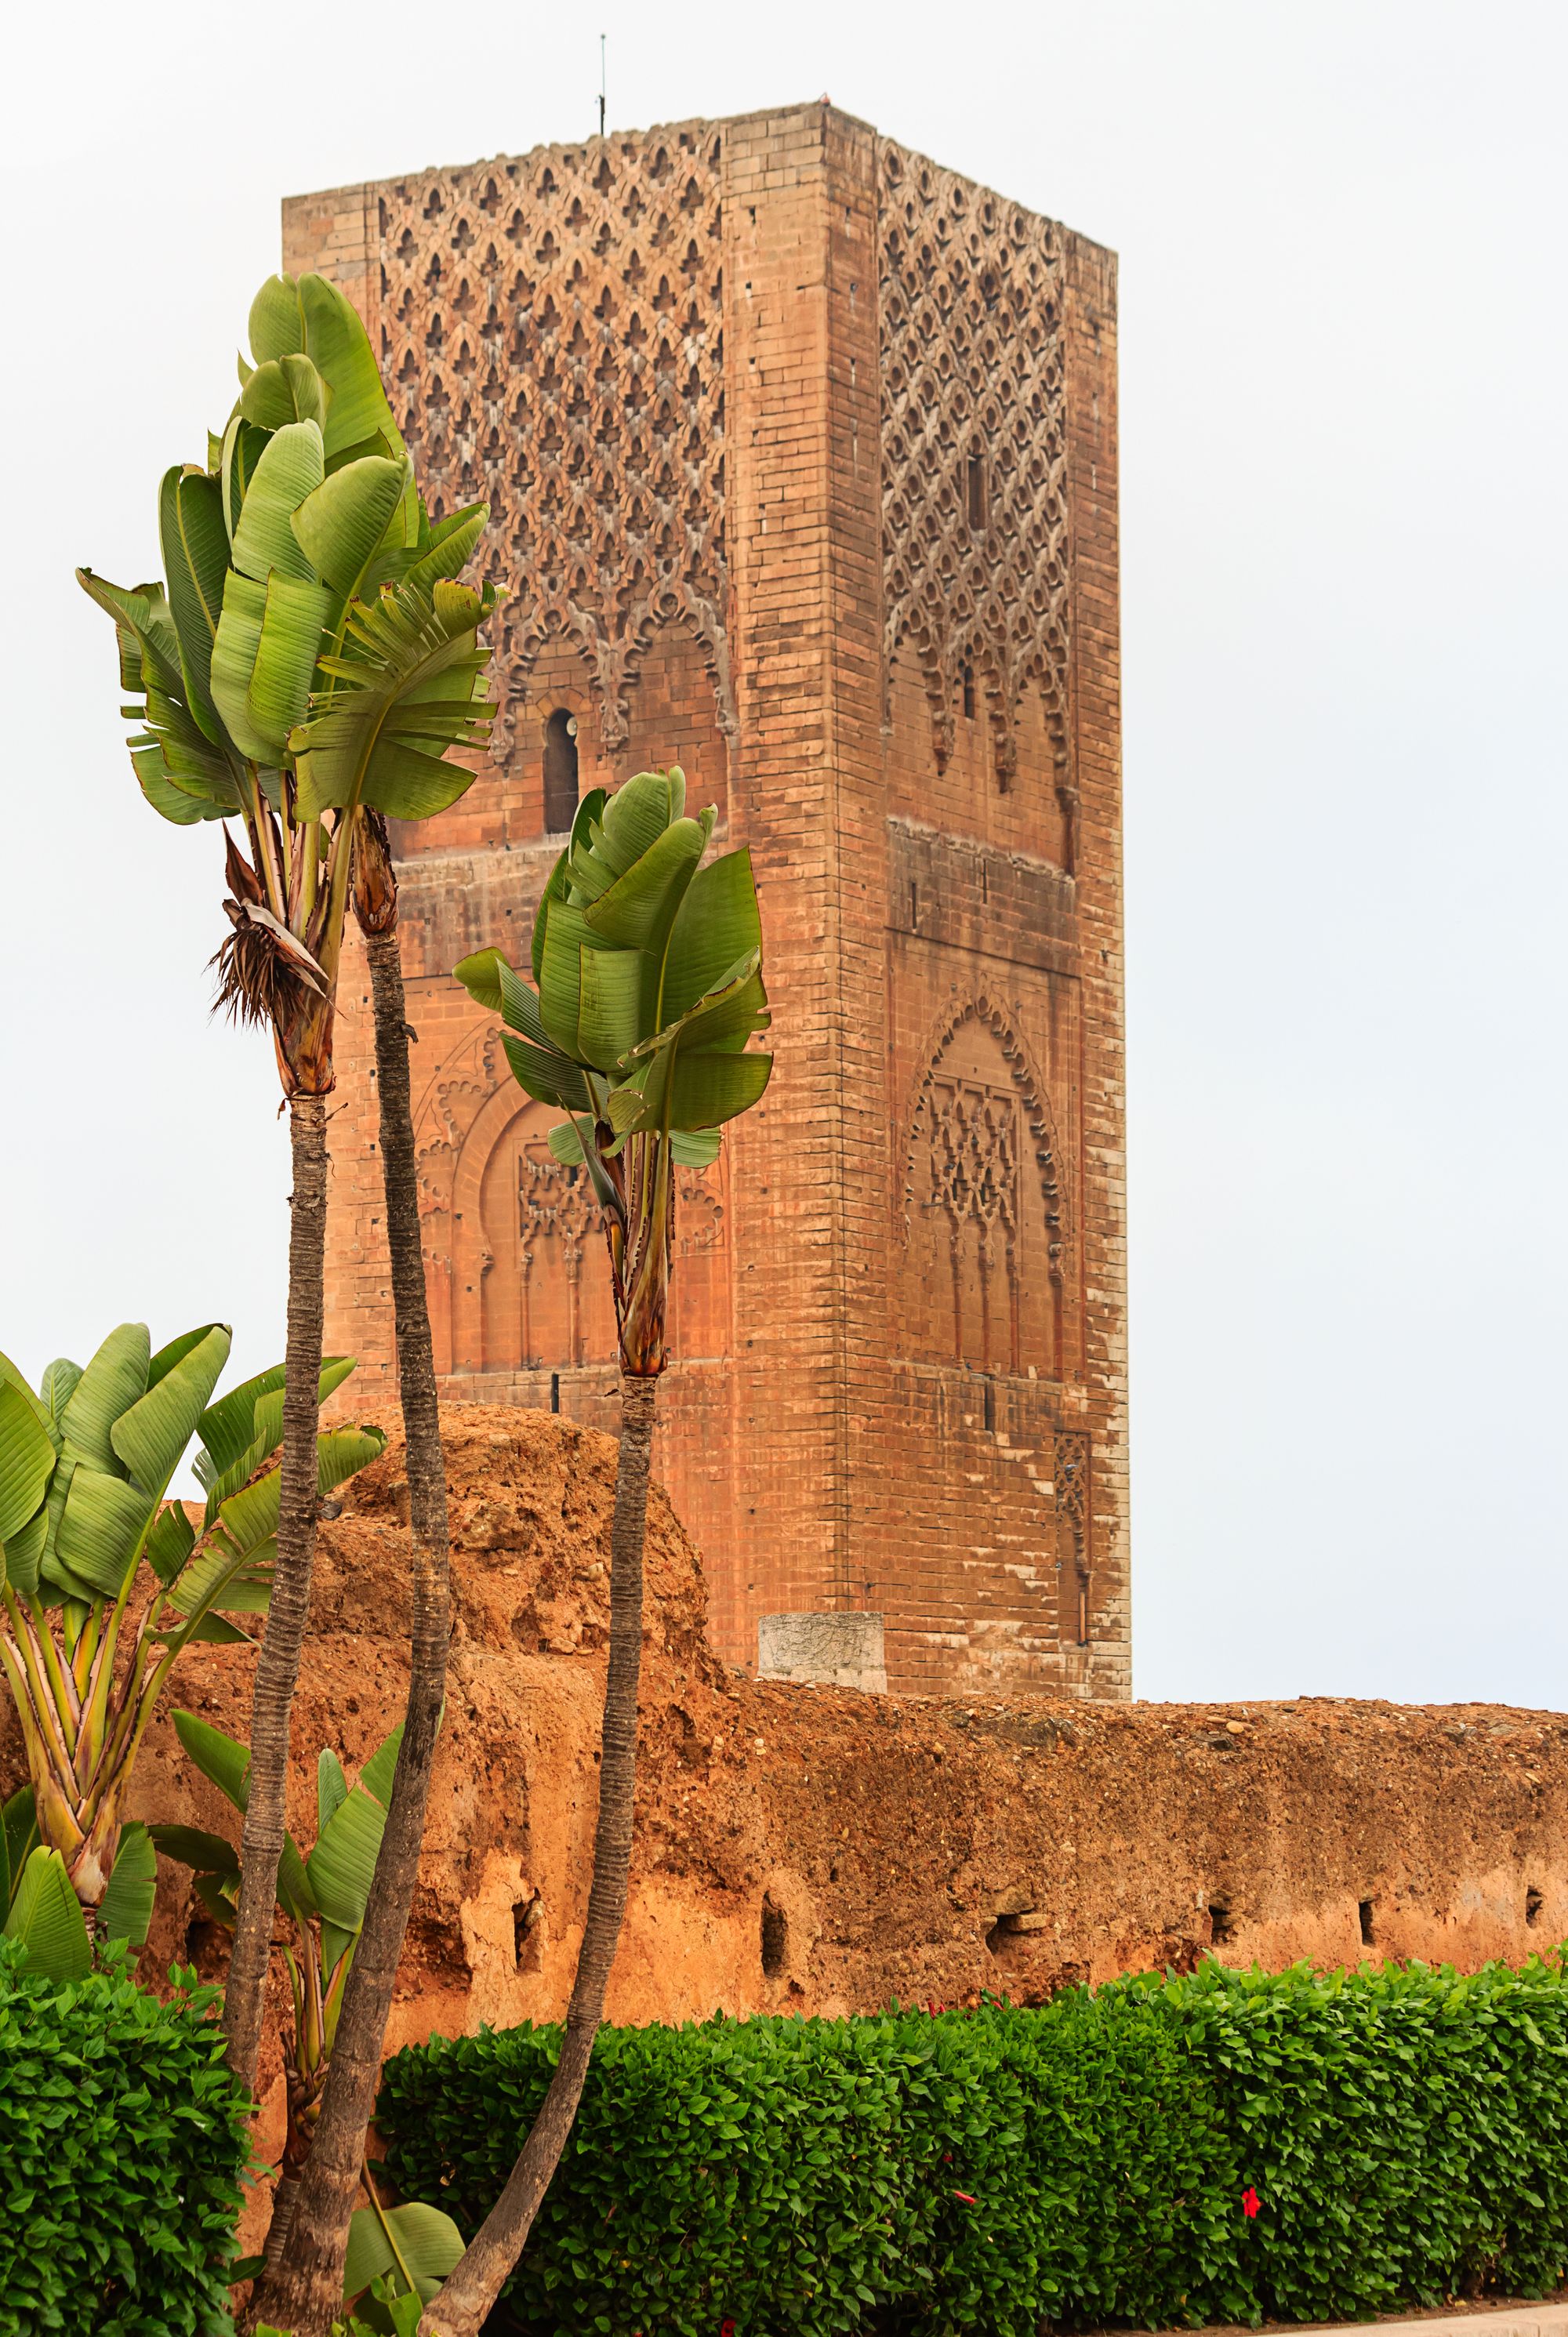 Hasan Mosque in Rabat